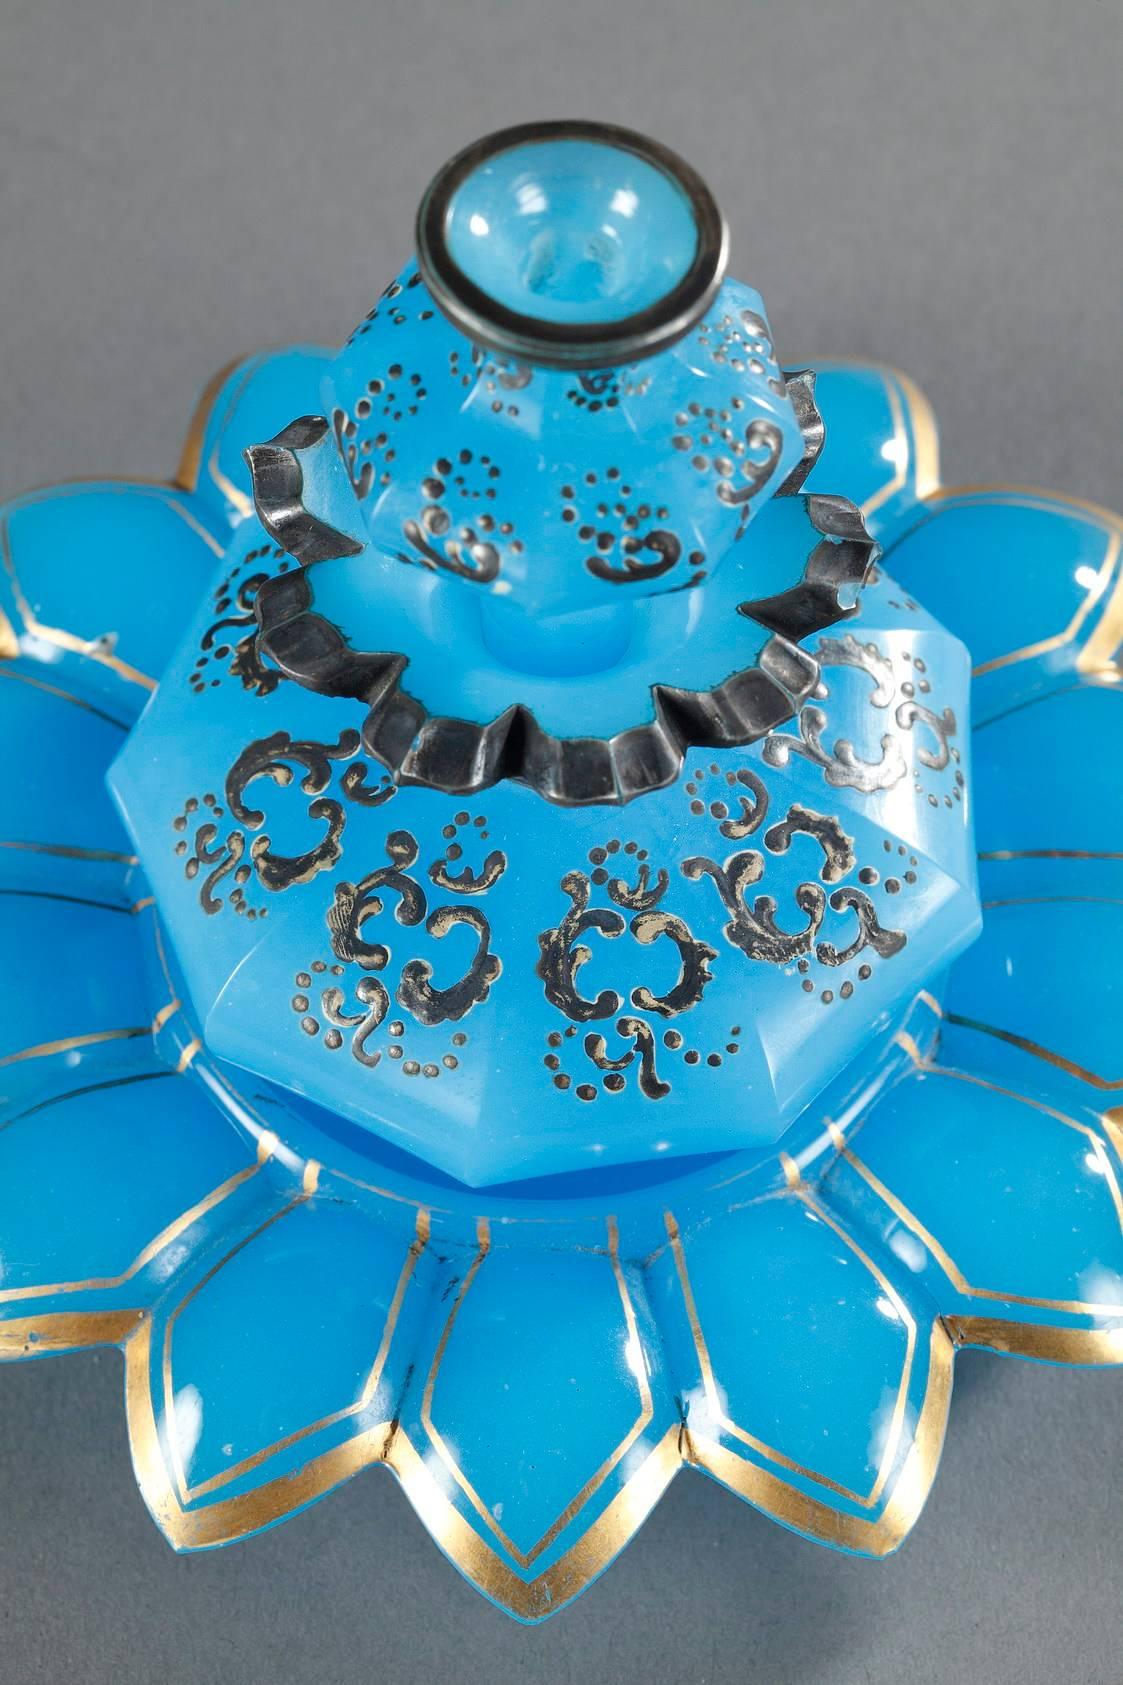 Mitte des 19. Jh. Blaues, opales Kristallbesteck, bestehend aus einer kleinen Flasche, einem Stopfen und einem kleinen, blumenförmigen Becher. Das Parfümfläschchen und der Flakon sind mit emailliertem und silbernem stilisiertem Rinceau verziert, und